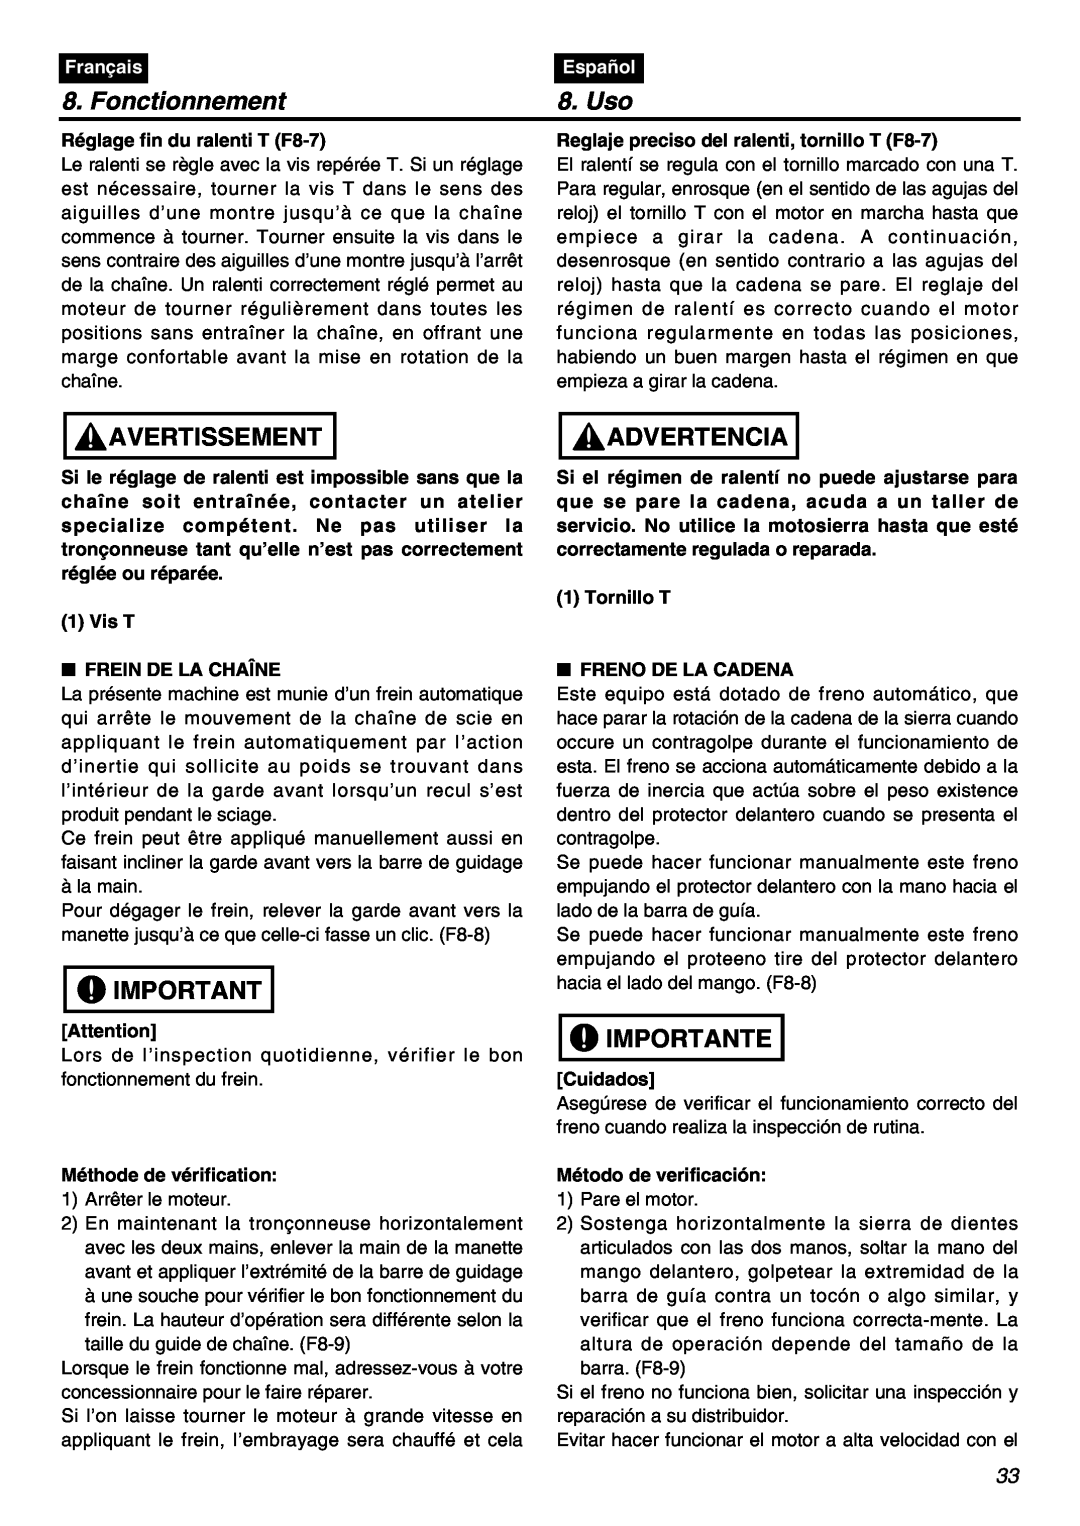 RedMax GZ400 manual Fonctionnement, Uso, Avertissement, Advertencia, Importante, Français, Español 